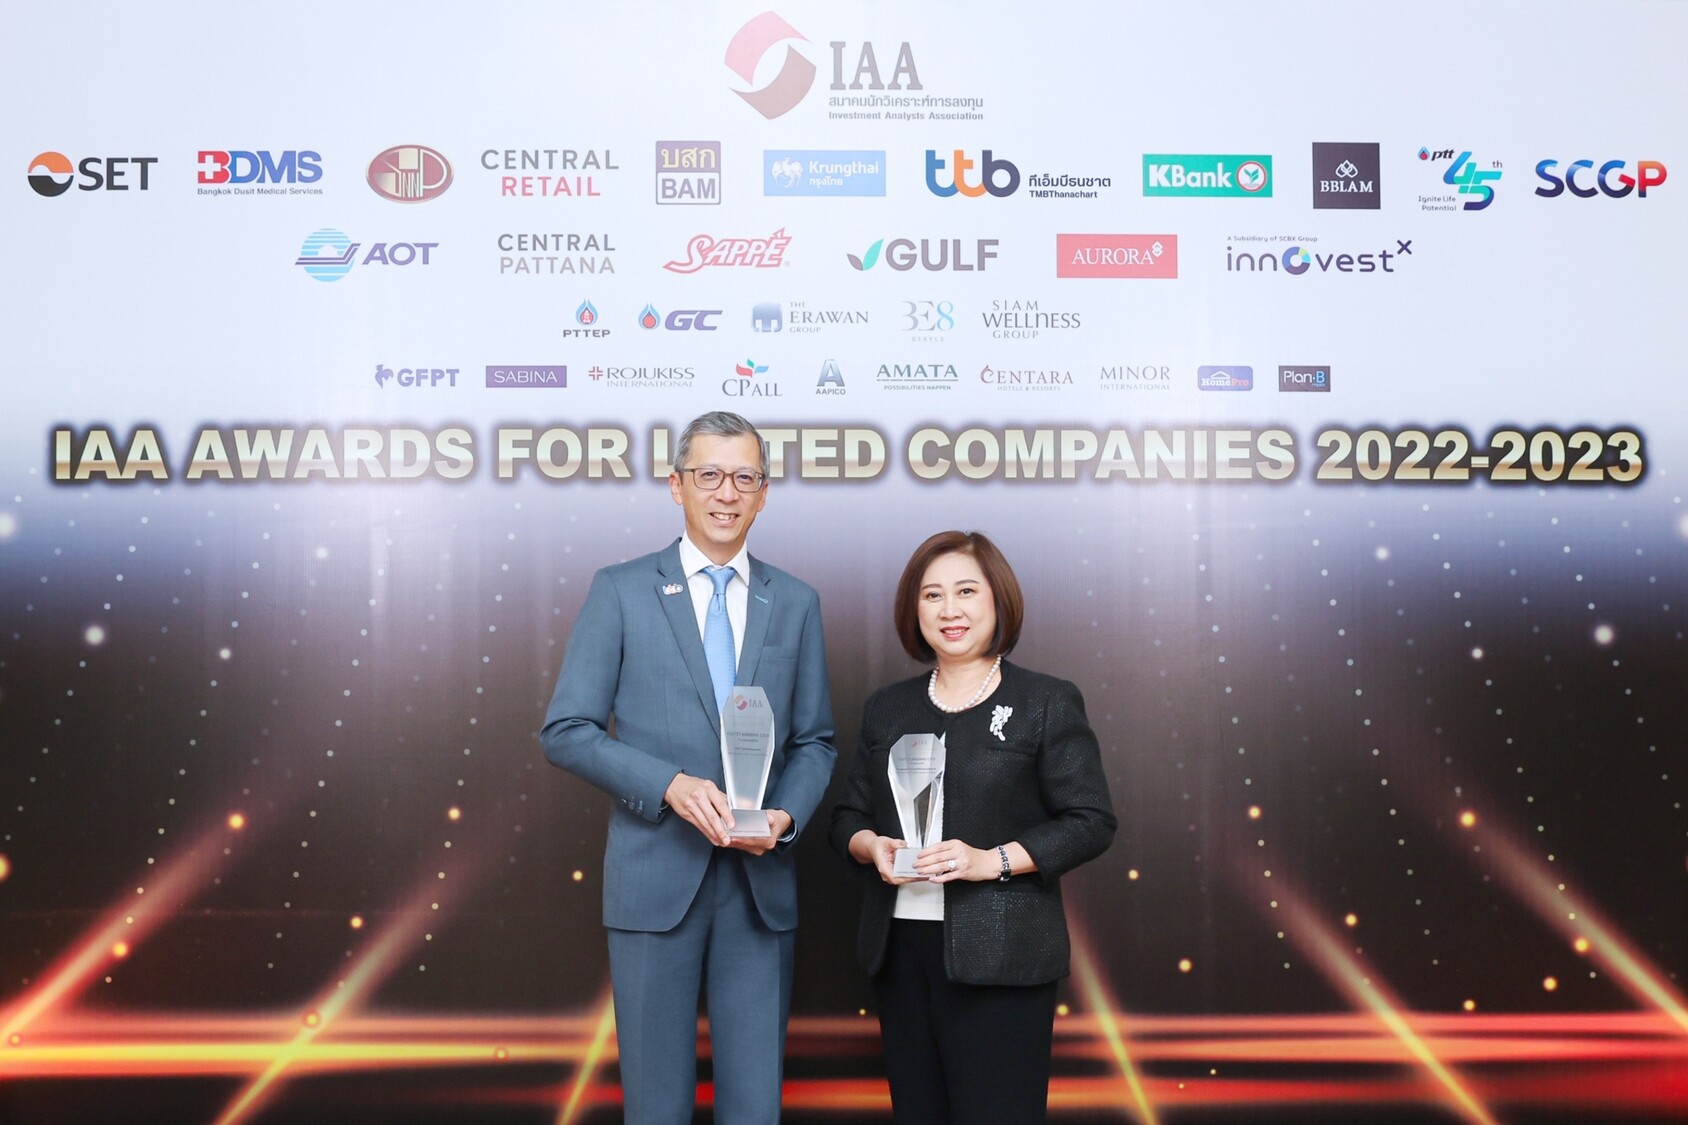 ทีเอ็มบีธนชาต คว้า 2 รางวัล จากเวที IAA Awards for Listed Companies 2022 - 2023 สะท้อนความเป็นเลิศของผู้บริหารในการนำพาองค์กรเติบโตอย่างยั่งยืน